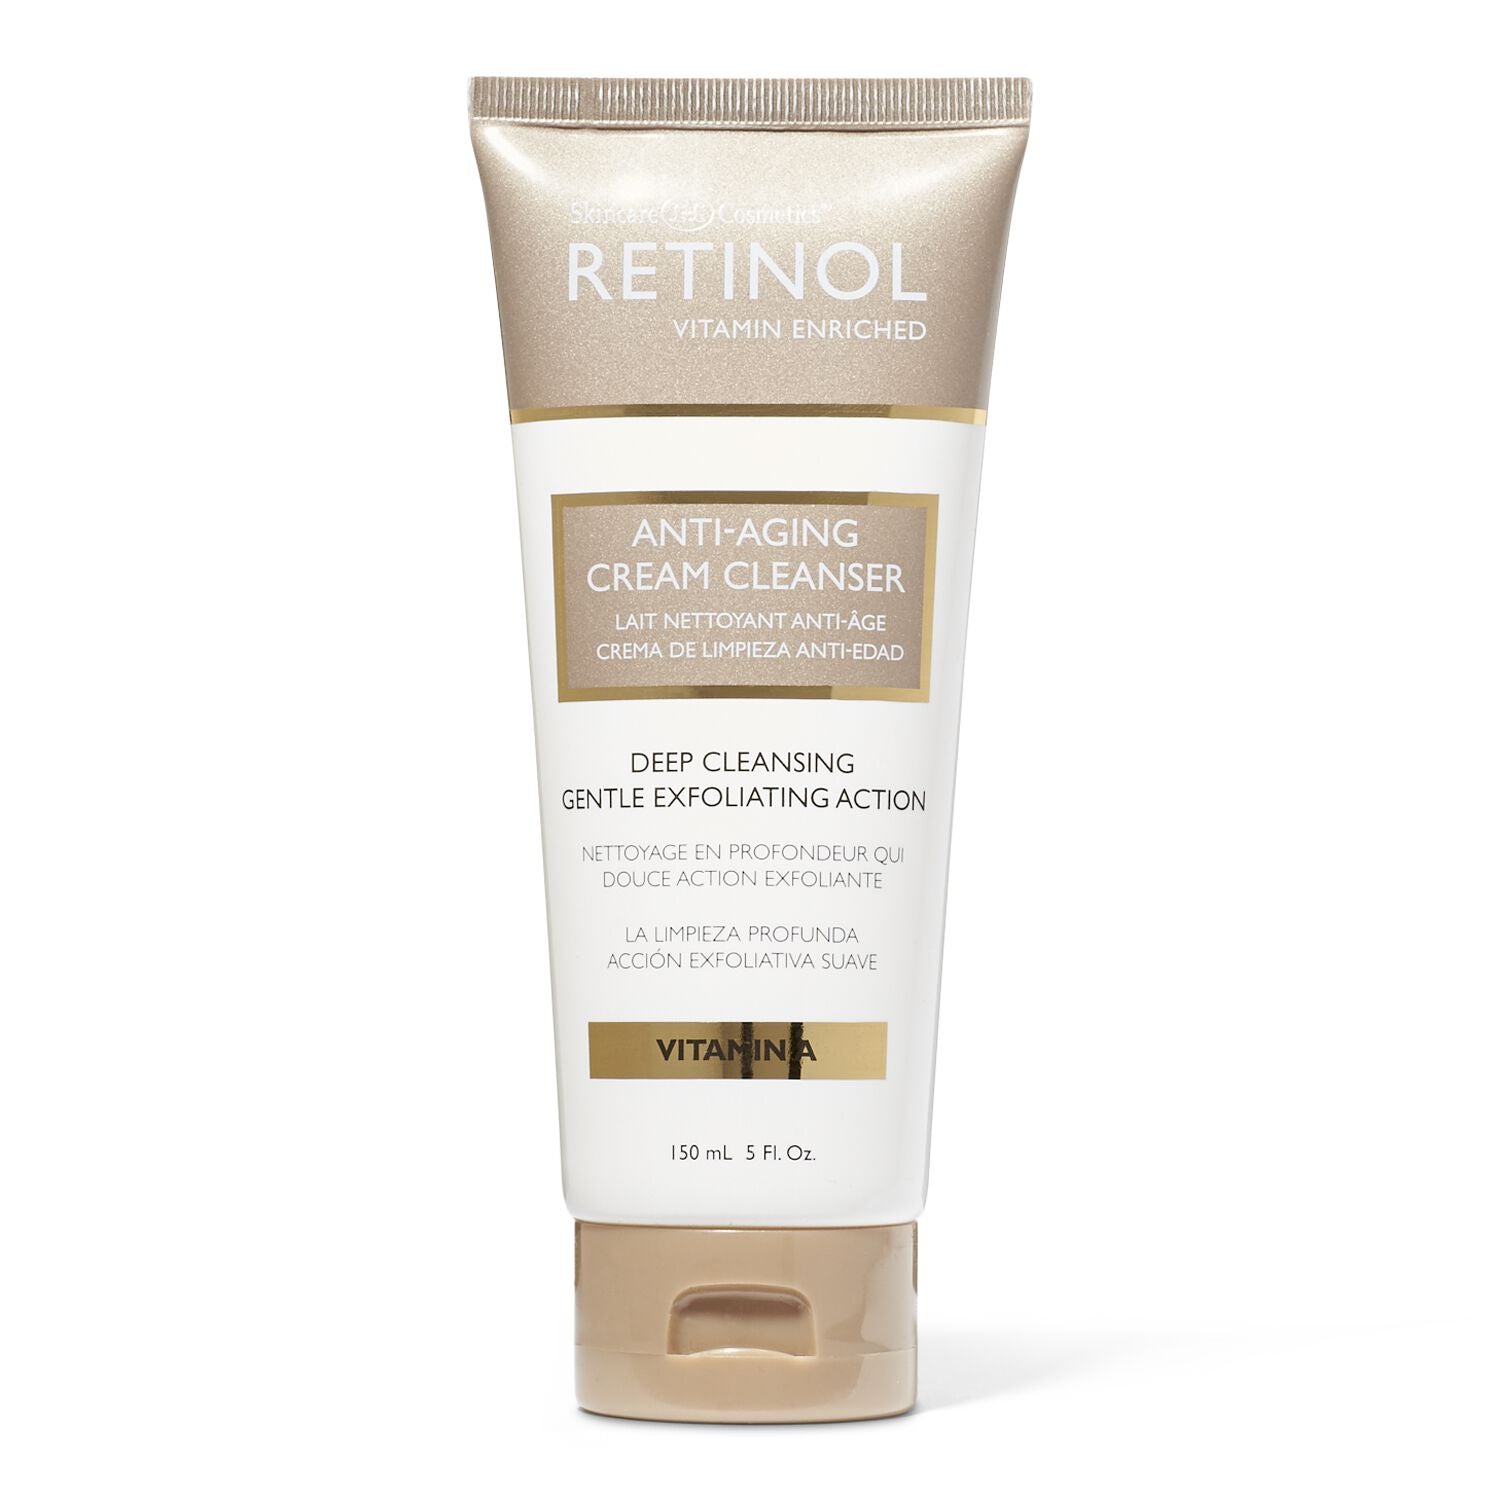 Retinol Anti Aging Cream Cleanser